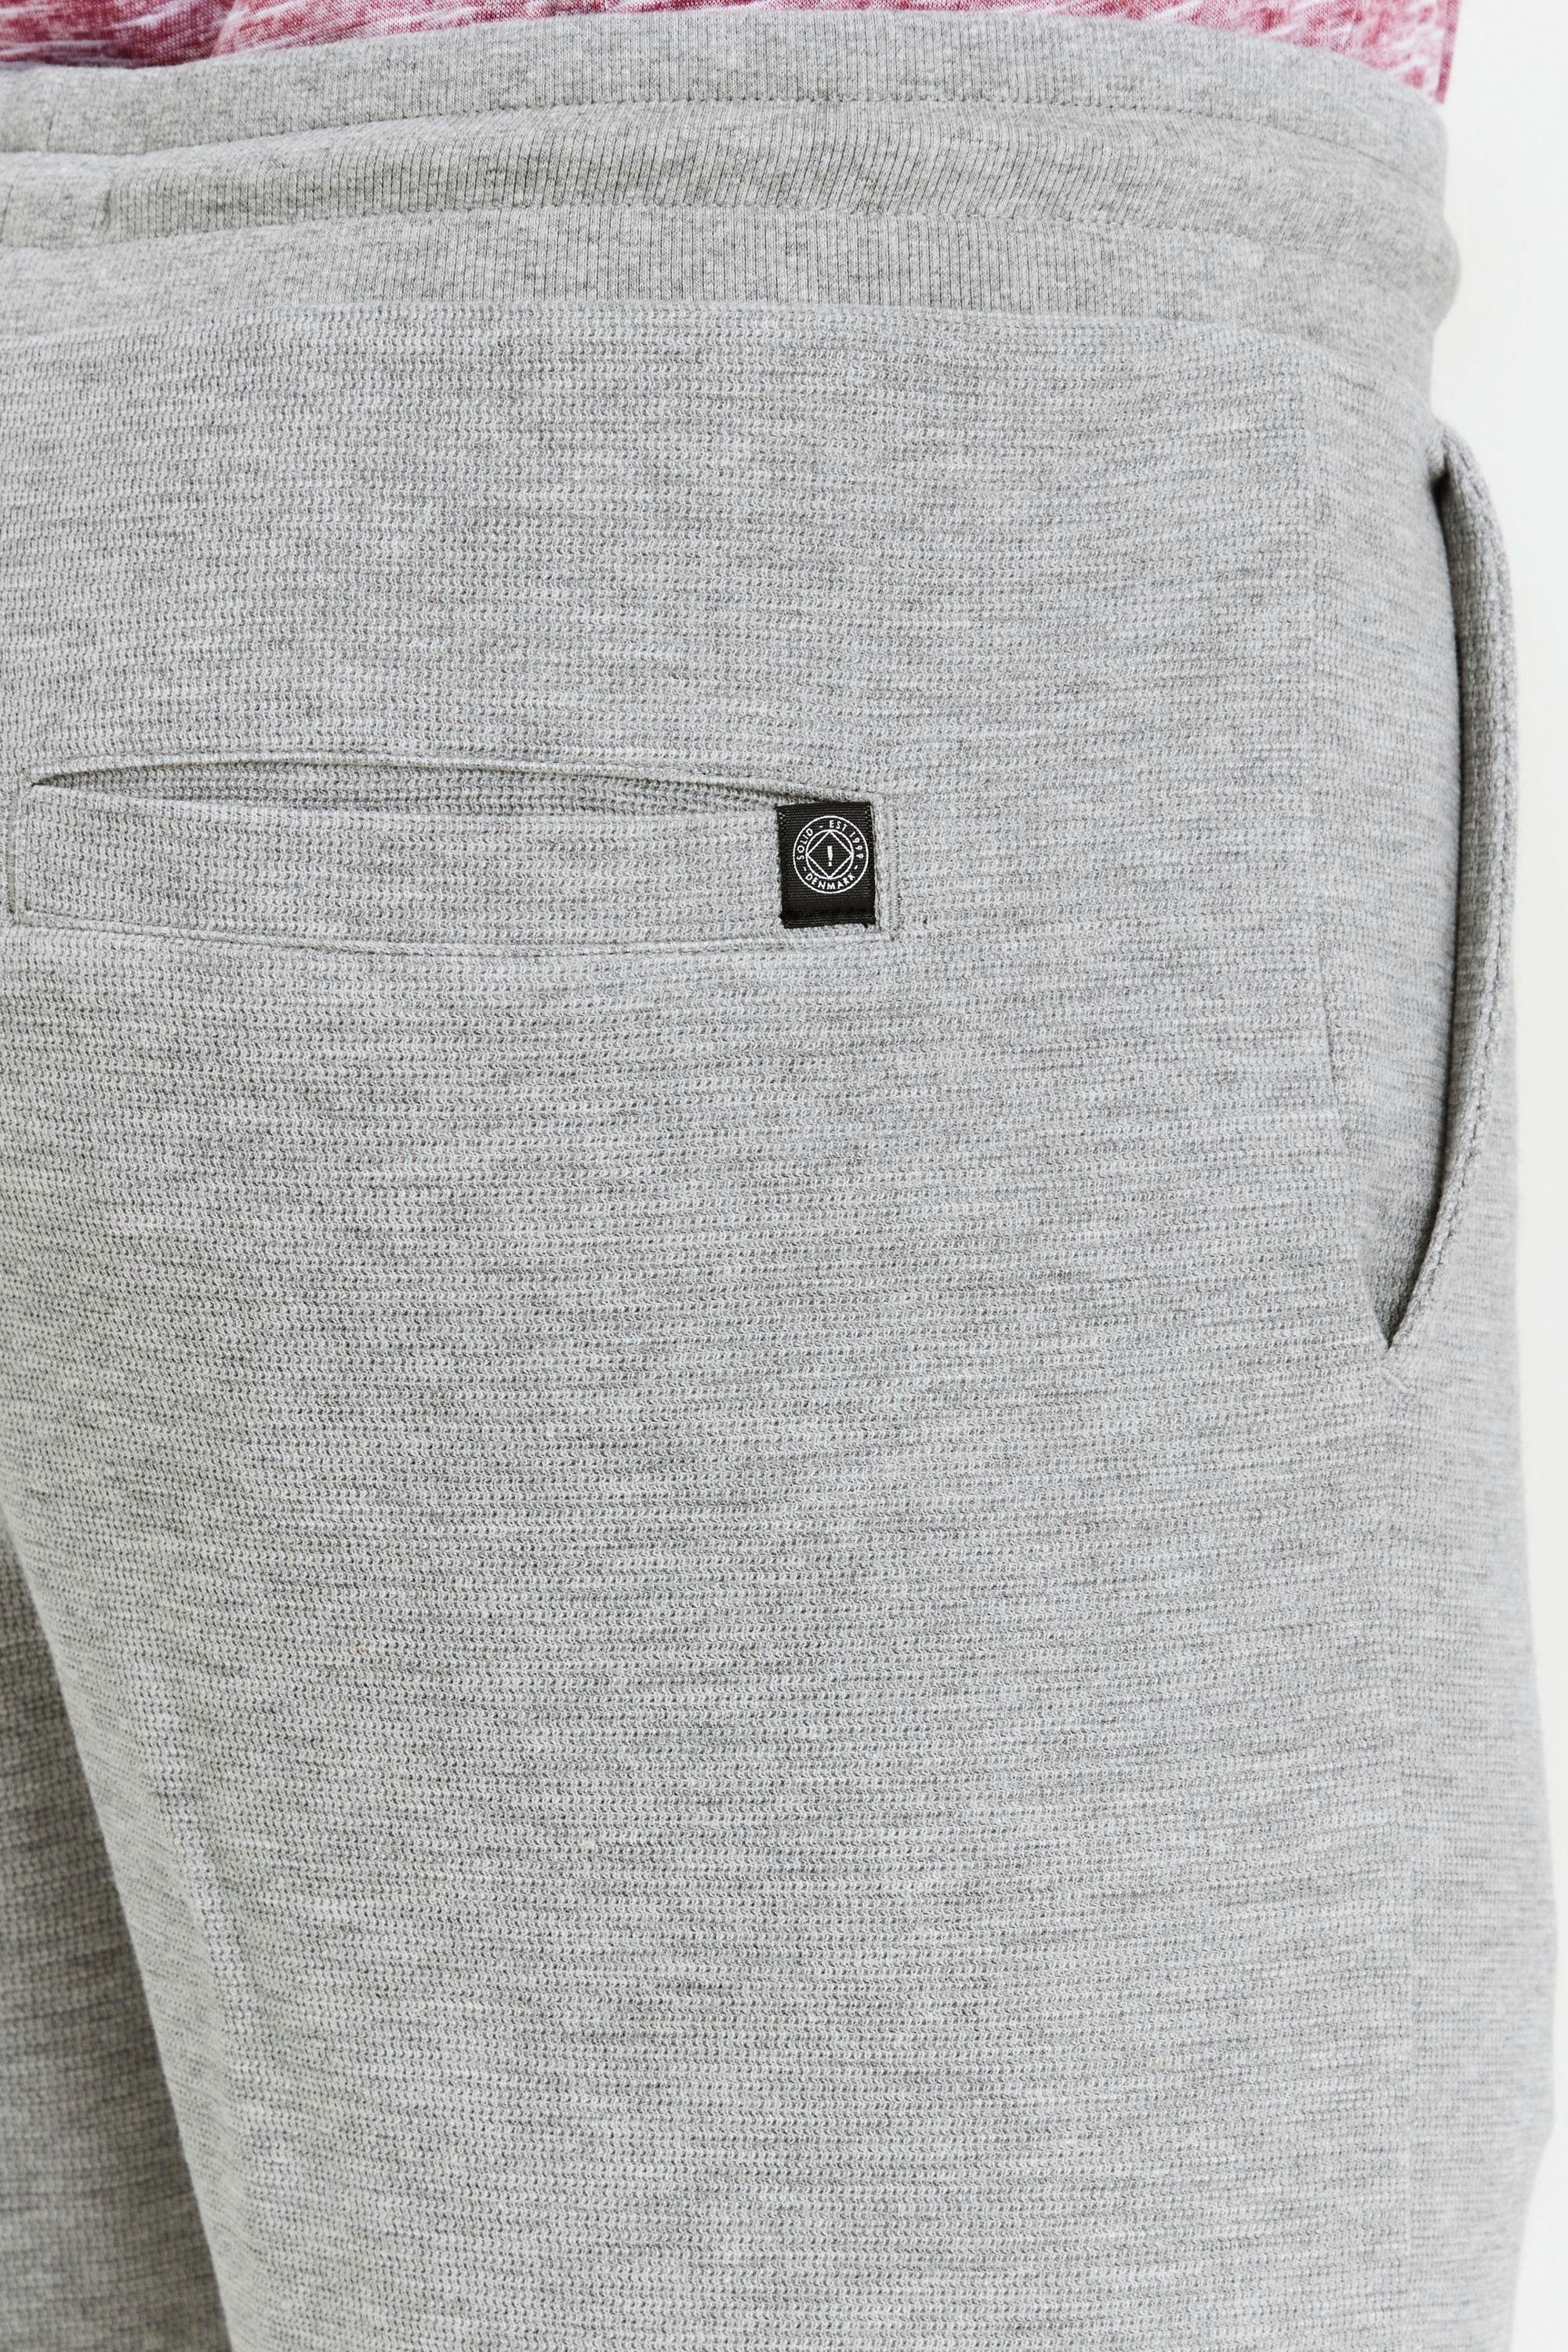 Bund Light SDRobson Sweatshorts !Solid und elastischem Grey Kordeln Shorts mit (1541011) Sweat Melange